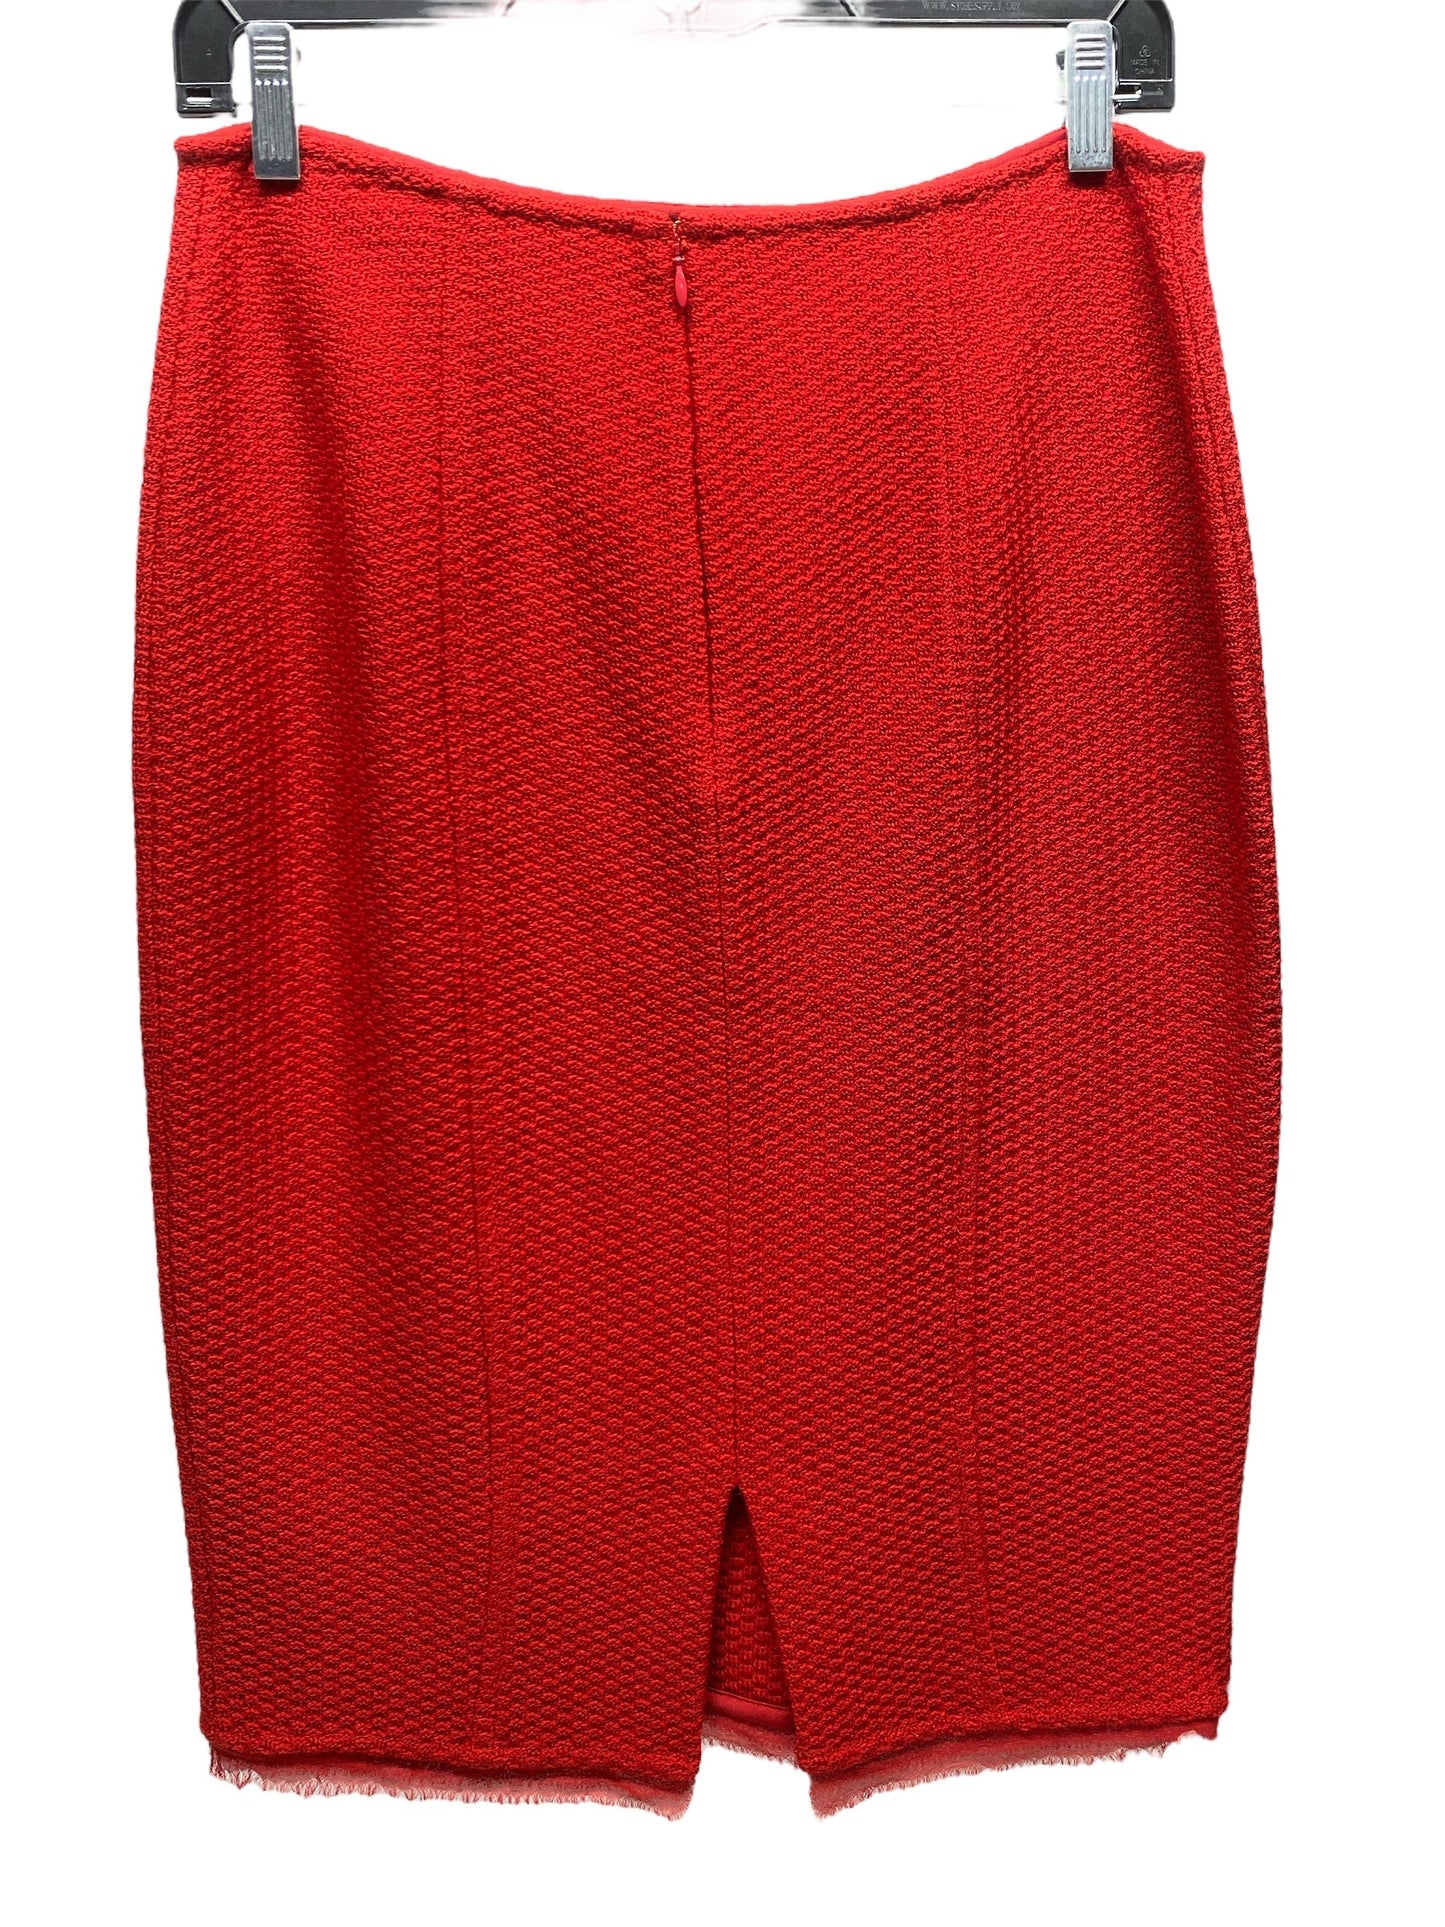 Red Skirt Designer St John Collection, Size 4